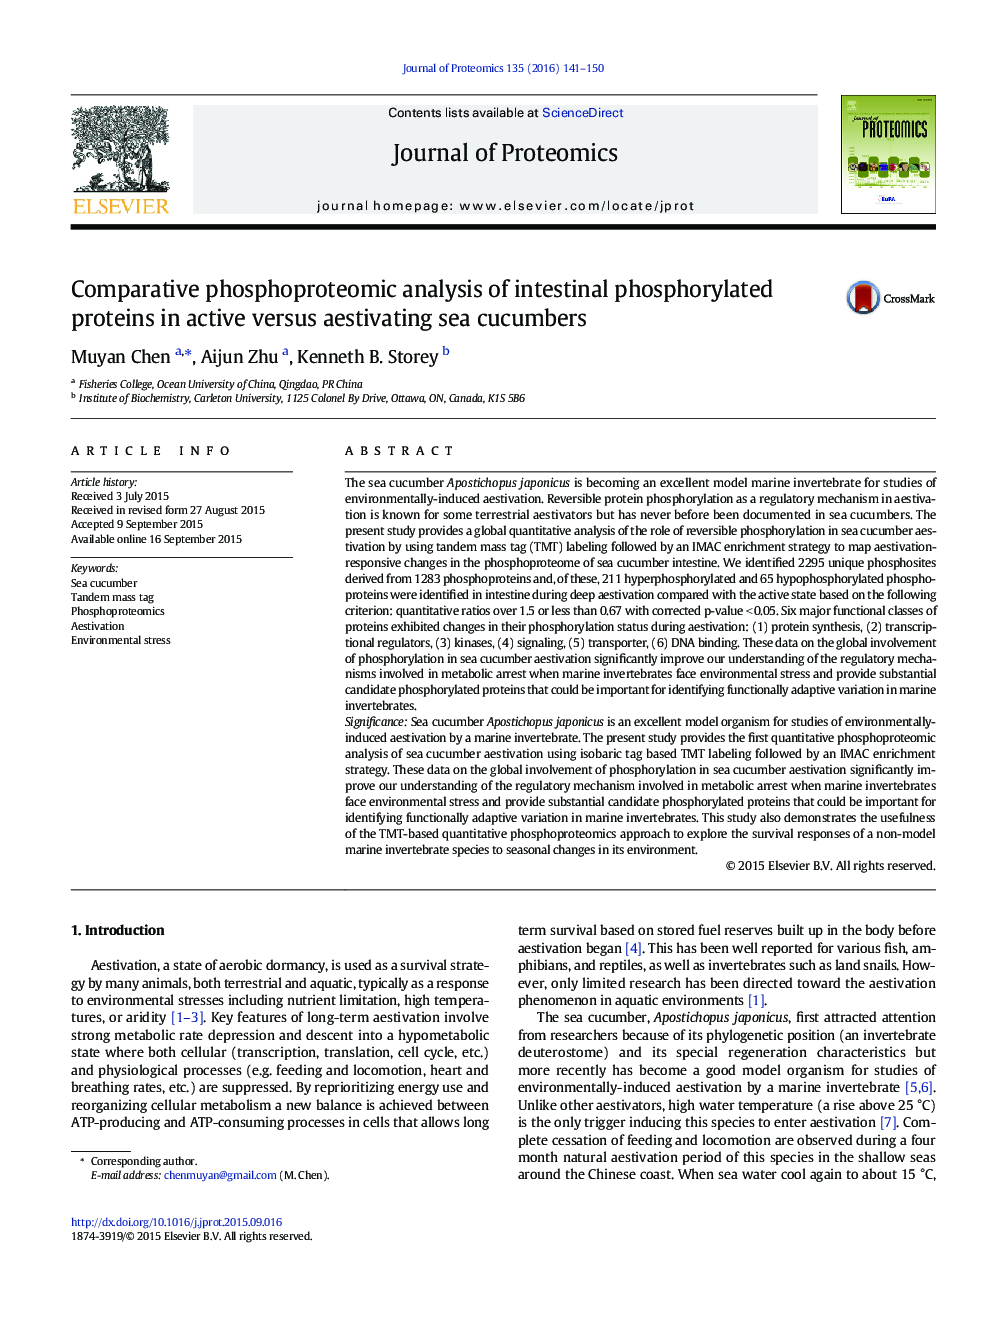 تجزیه و تحلیل فسفوپروتئومی عصبی پروتئین های فسفریلیته روده ای در فعالیت های ضد قارچ دریایی فعال 